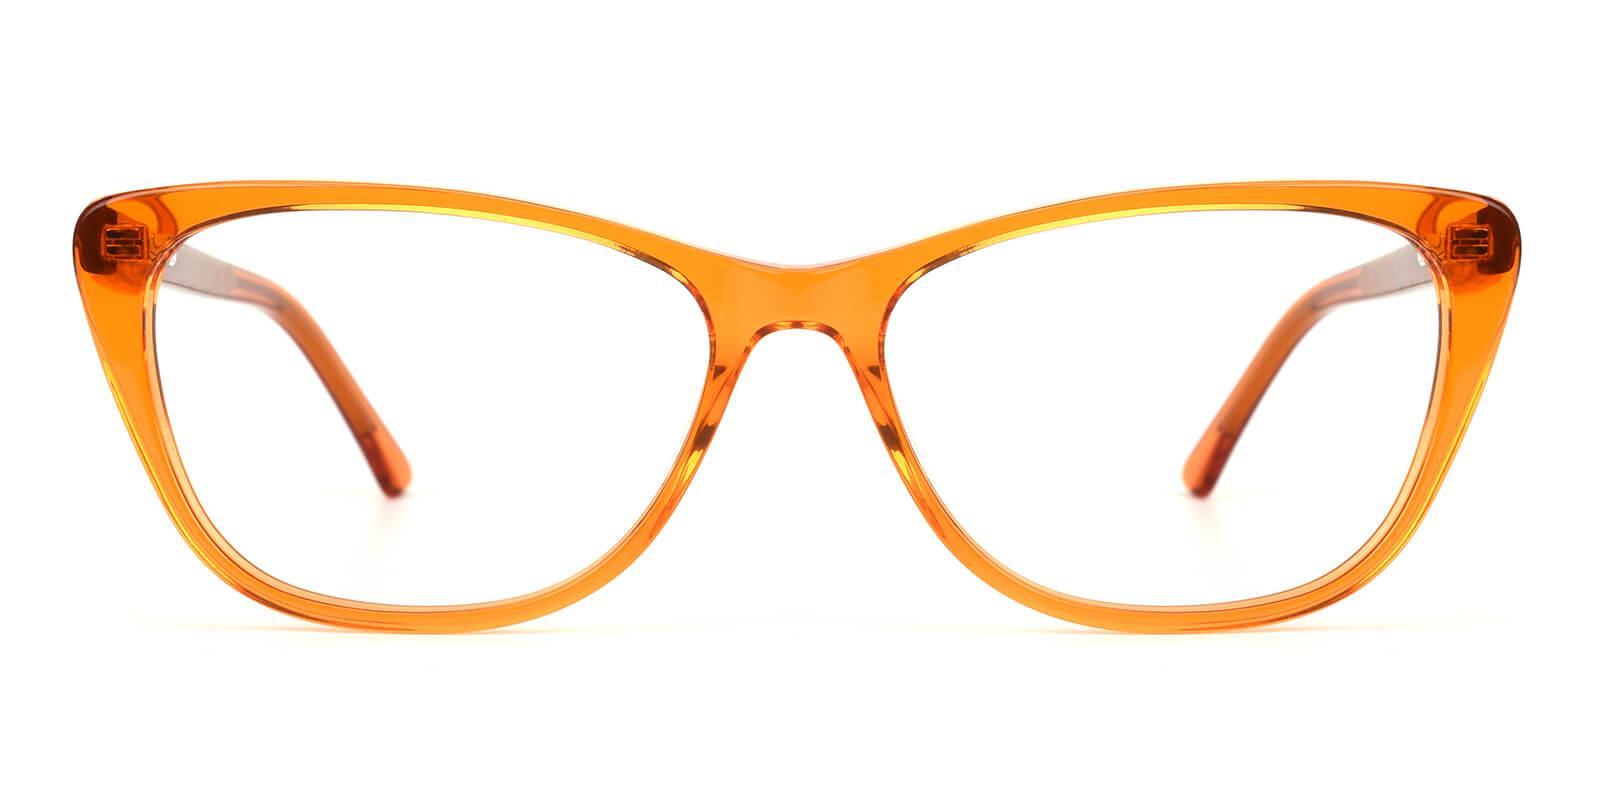 Yuke Orange Acetate Eyeglasses , SpringHinges , UniversalBridgeFit Frames from ABBE Glasses